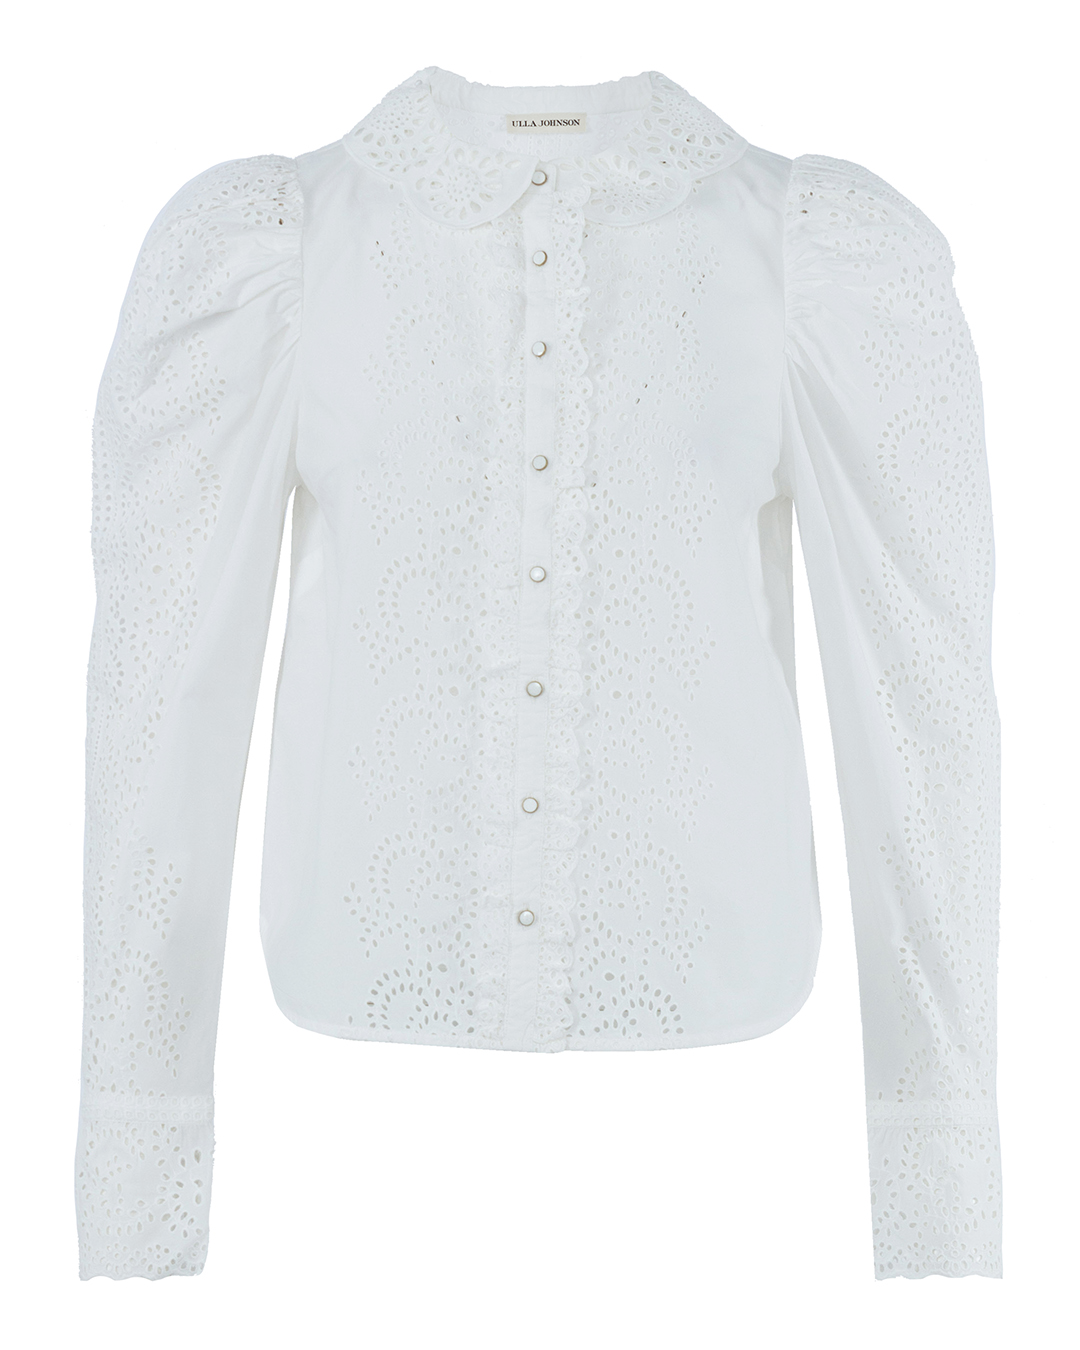 Женская блуза из хлопка  ULLA JOHNSON, сезон: лето 2022. Купить за 54600 руб. | Фото 1